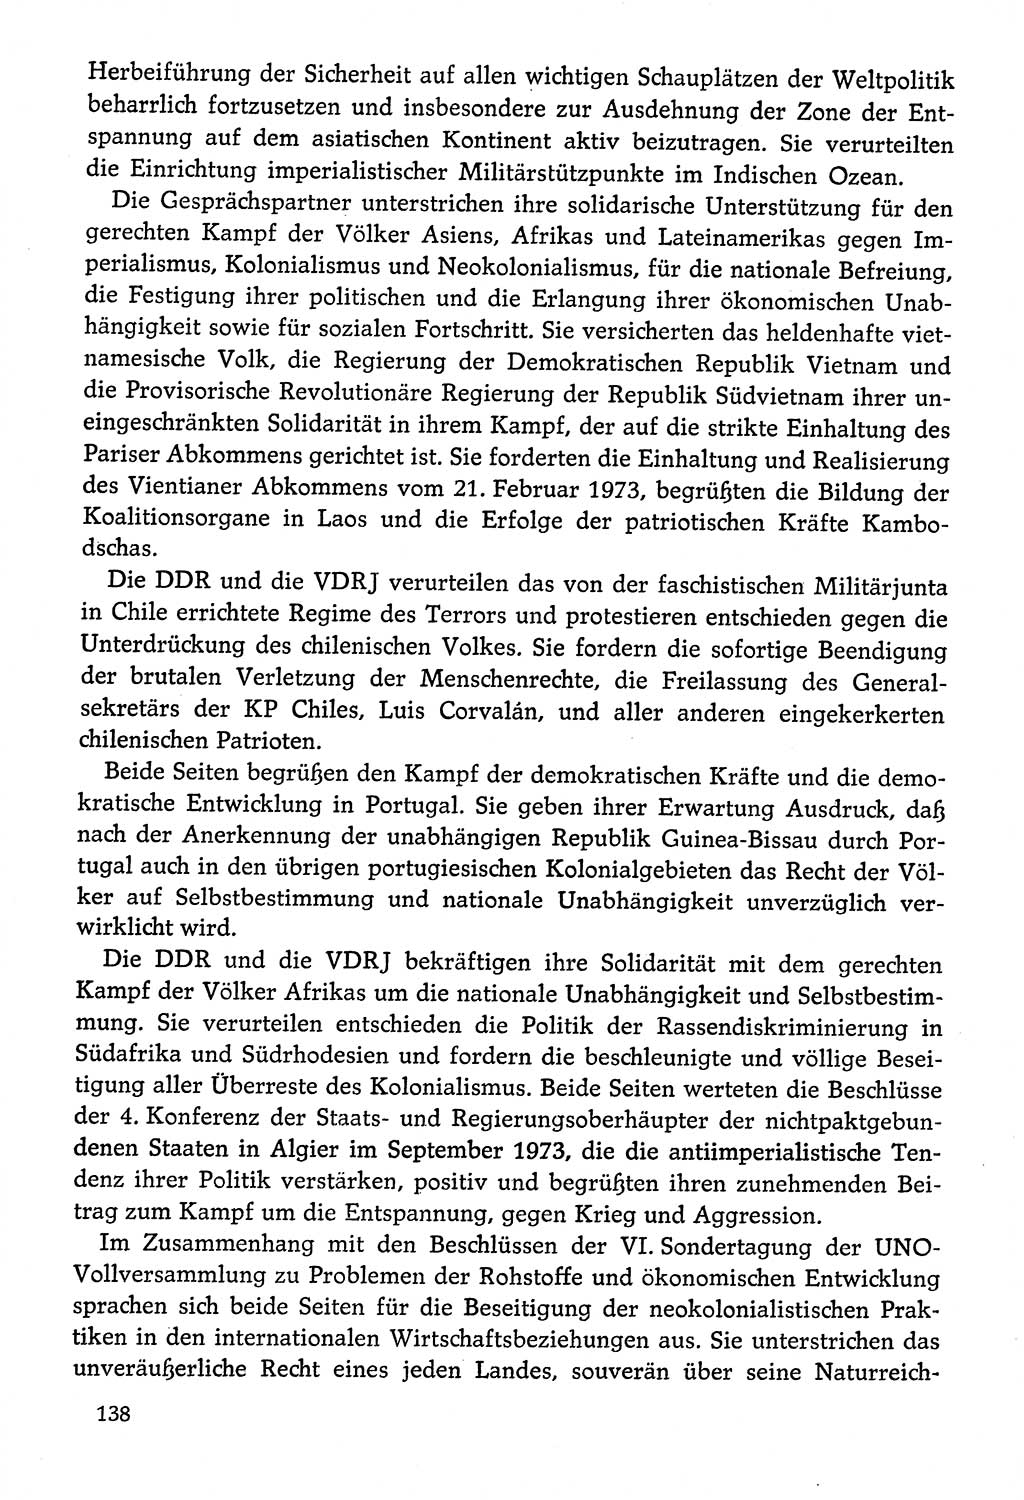 Dokumente der Sozialistischen Einheitspartei Deutschlands (SED) [Deutsche Demokratische Republik (DDR)] 1974-1975, Seite 138 (Dok. SED DDR 1978, Bd. ⅩⅤ, S. 138)